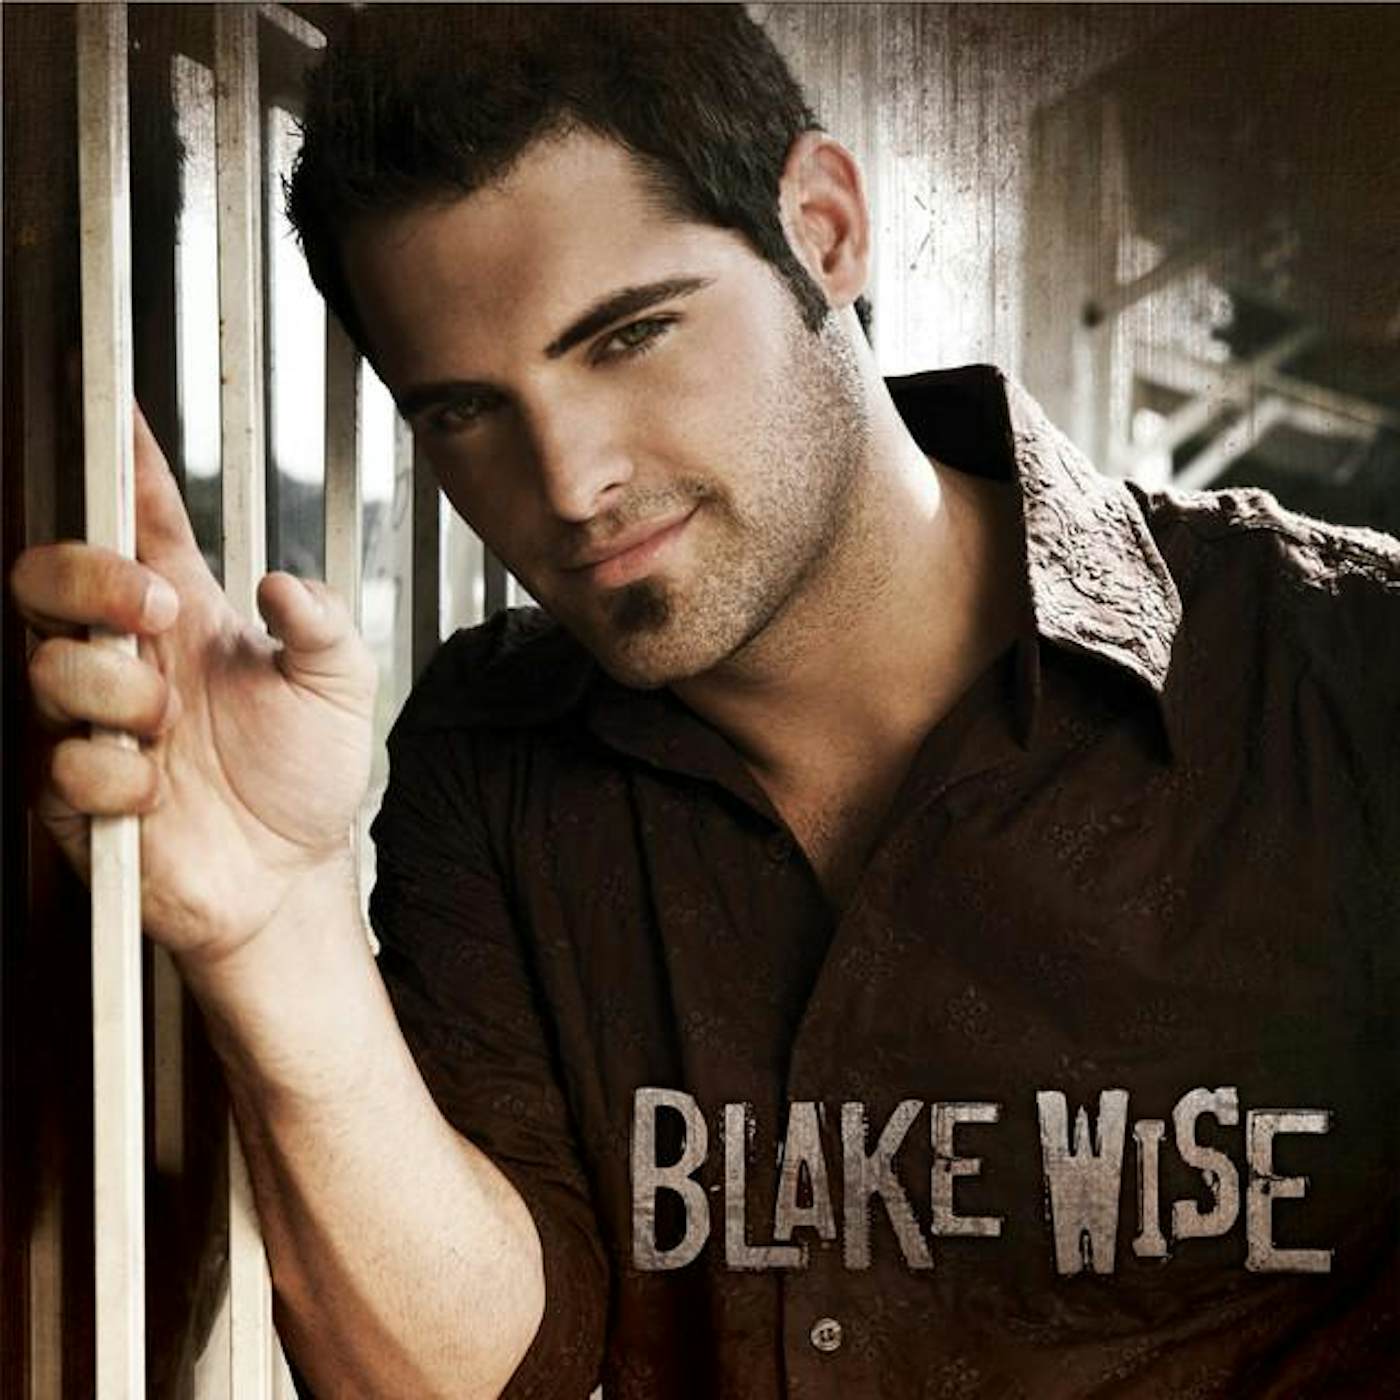 Blake Wise